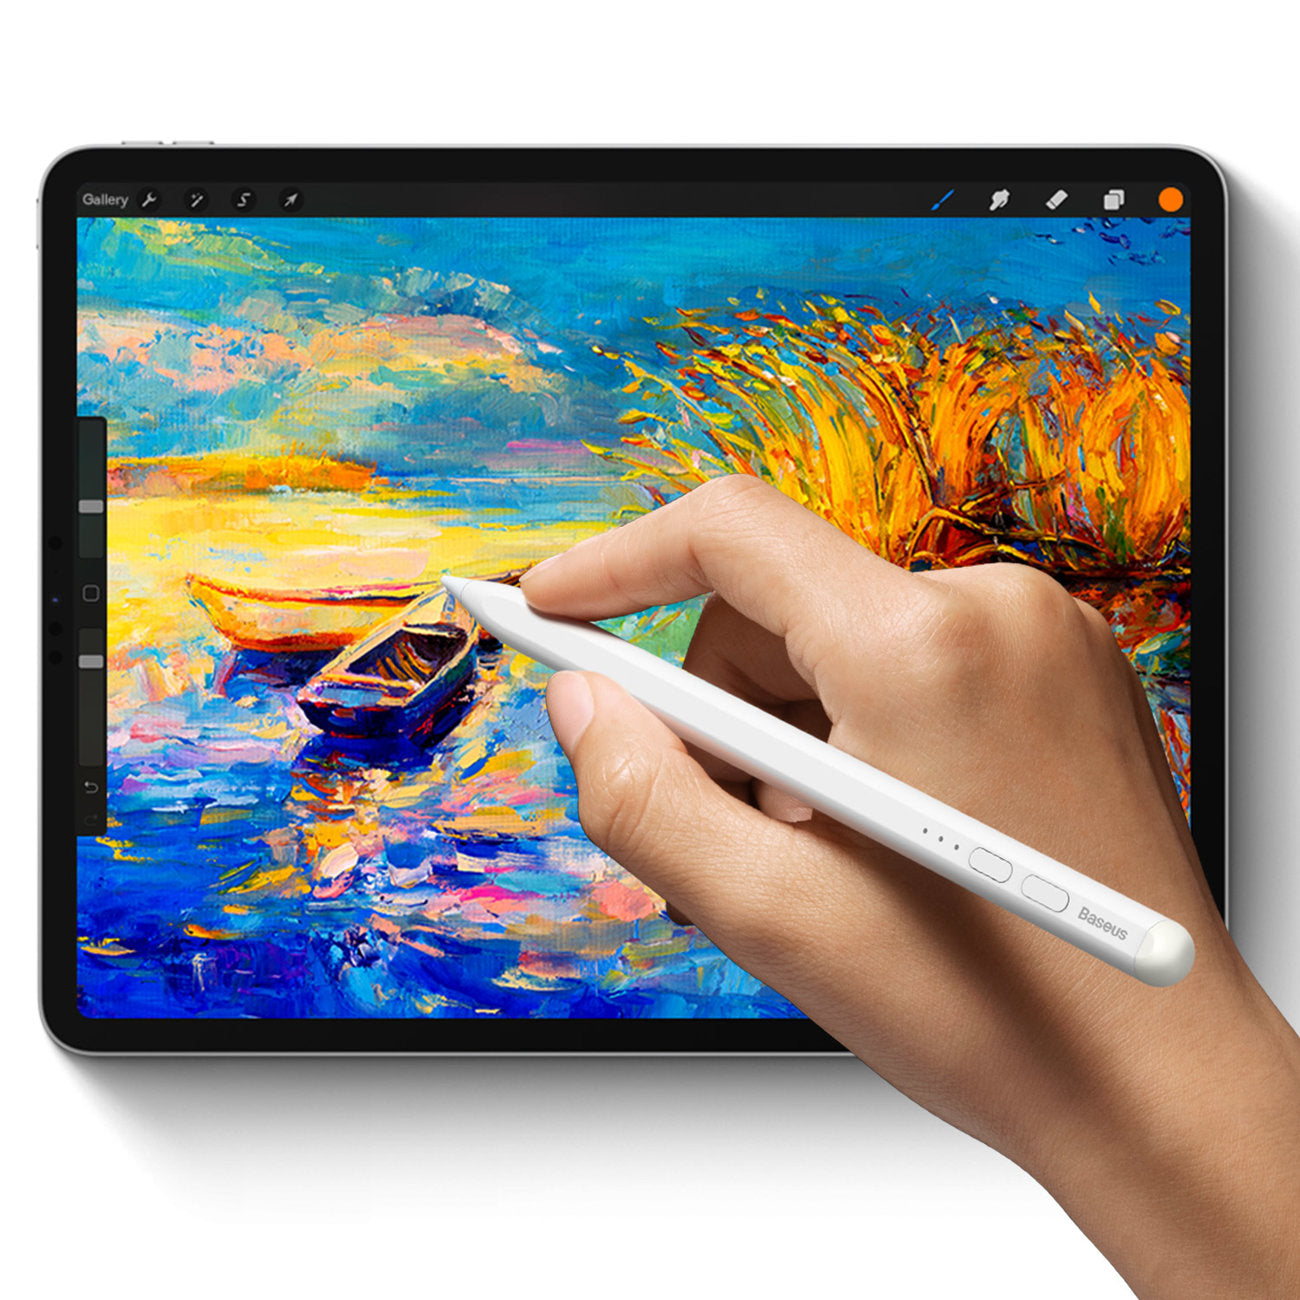 Stift Baseus Smooth Writing Active Stylus für iPad / Pro / Air / Mini (2018 und neuere), Weiß